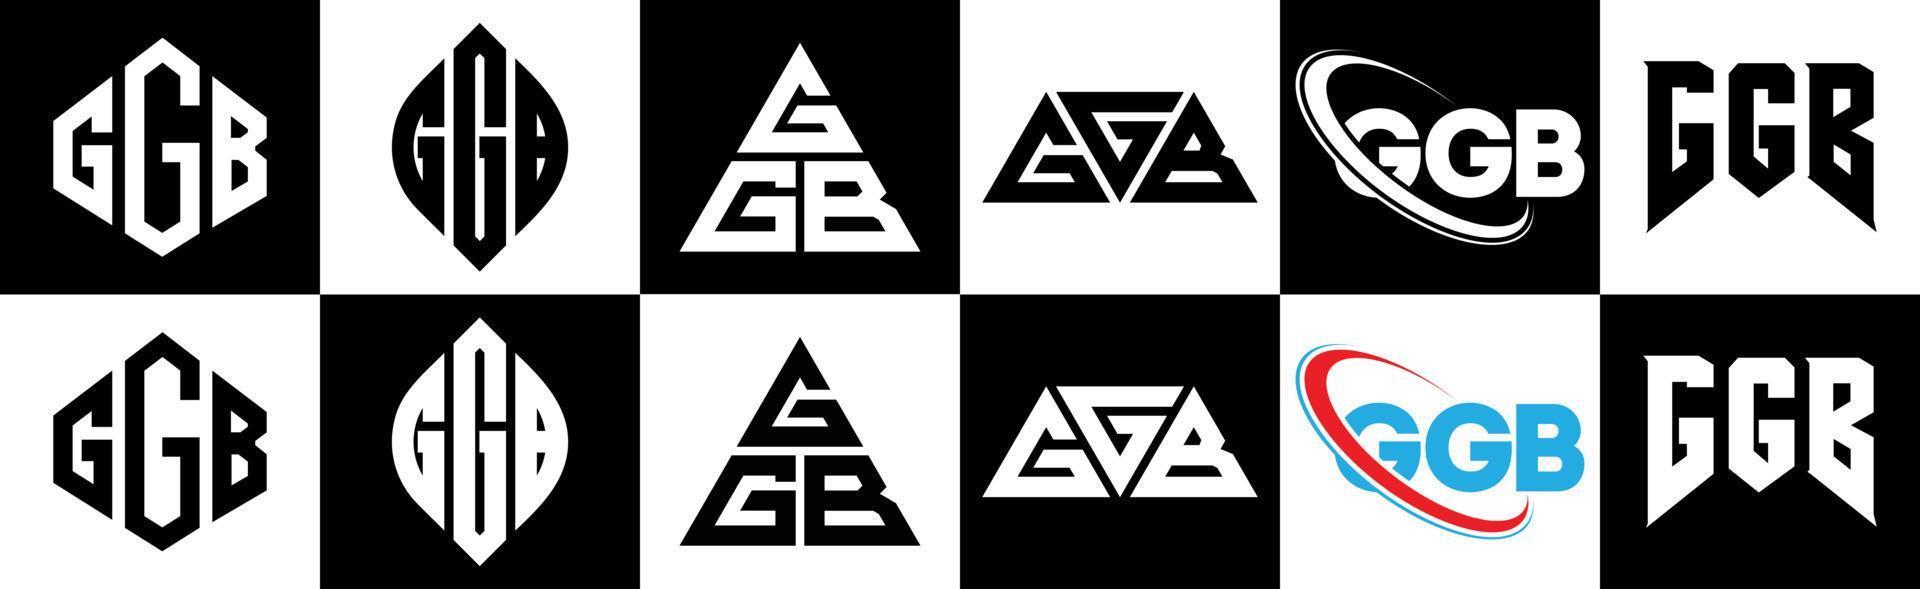 création de logo de lettre ggb en six styles. polygone ggb, cercle, triangle, hexagone, style plat et simple avec logo de lettre de variation de couleur noir et blanc dans un plan de travail. logo minimaliste et classique ggb vecteur